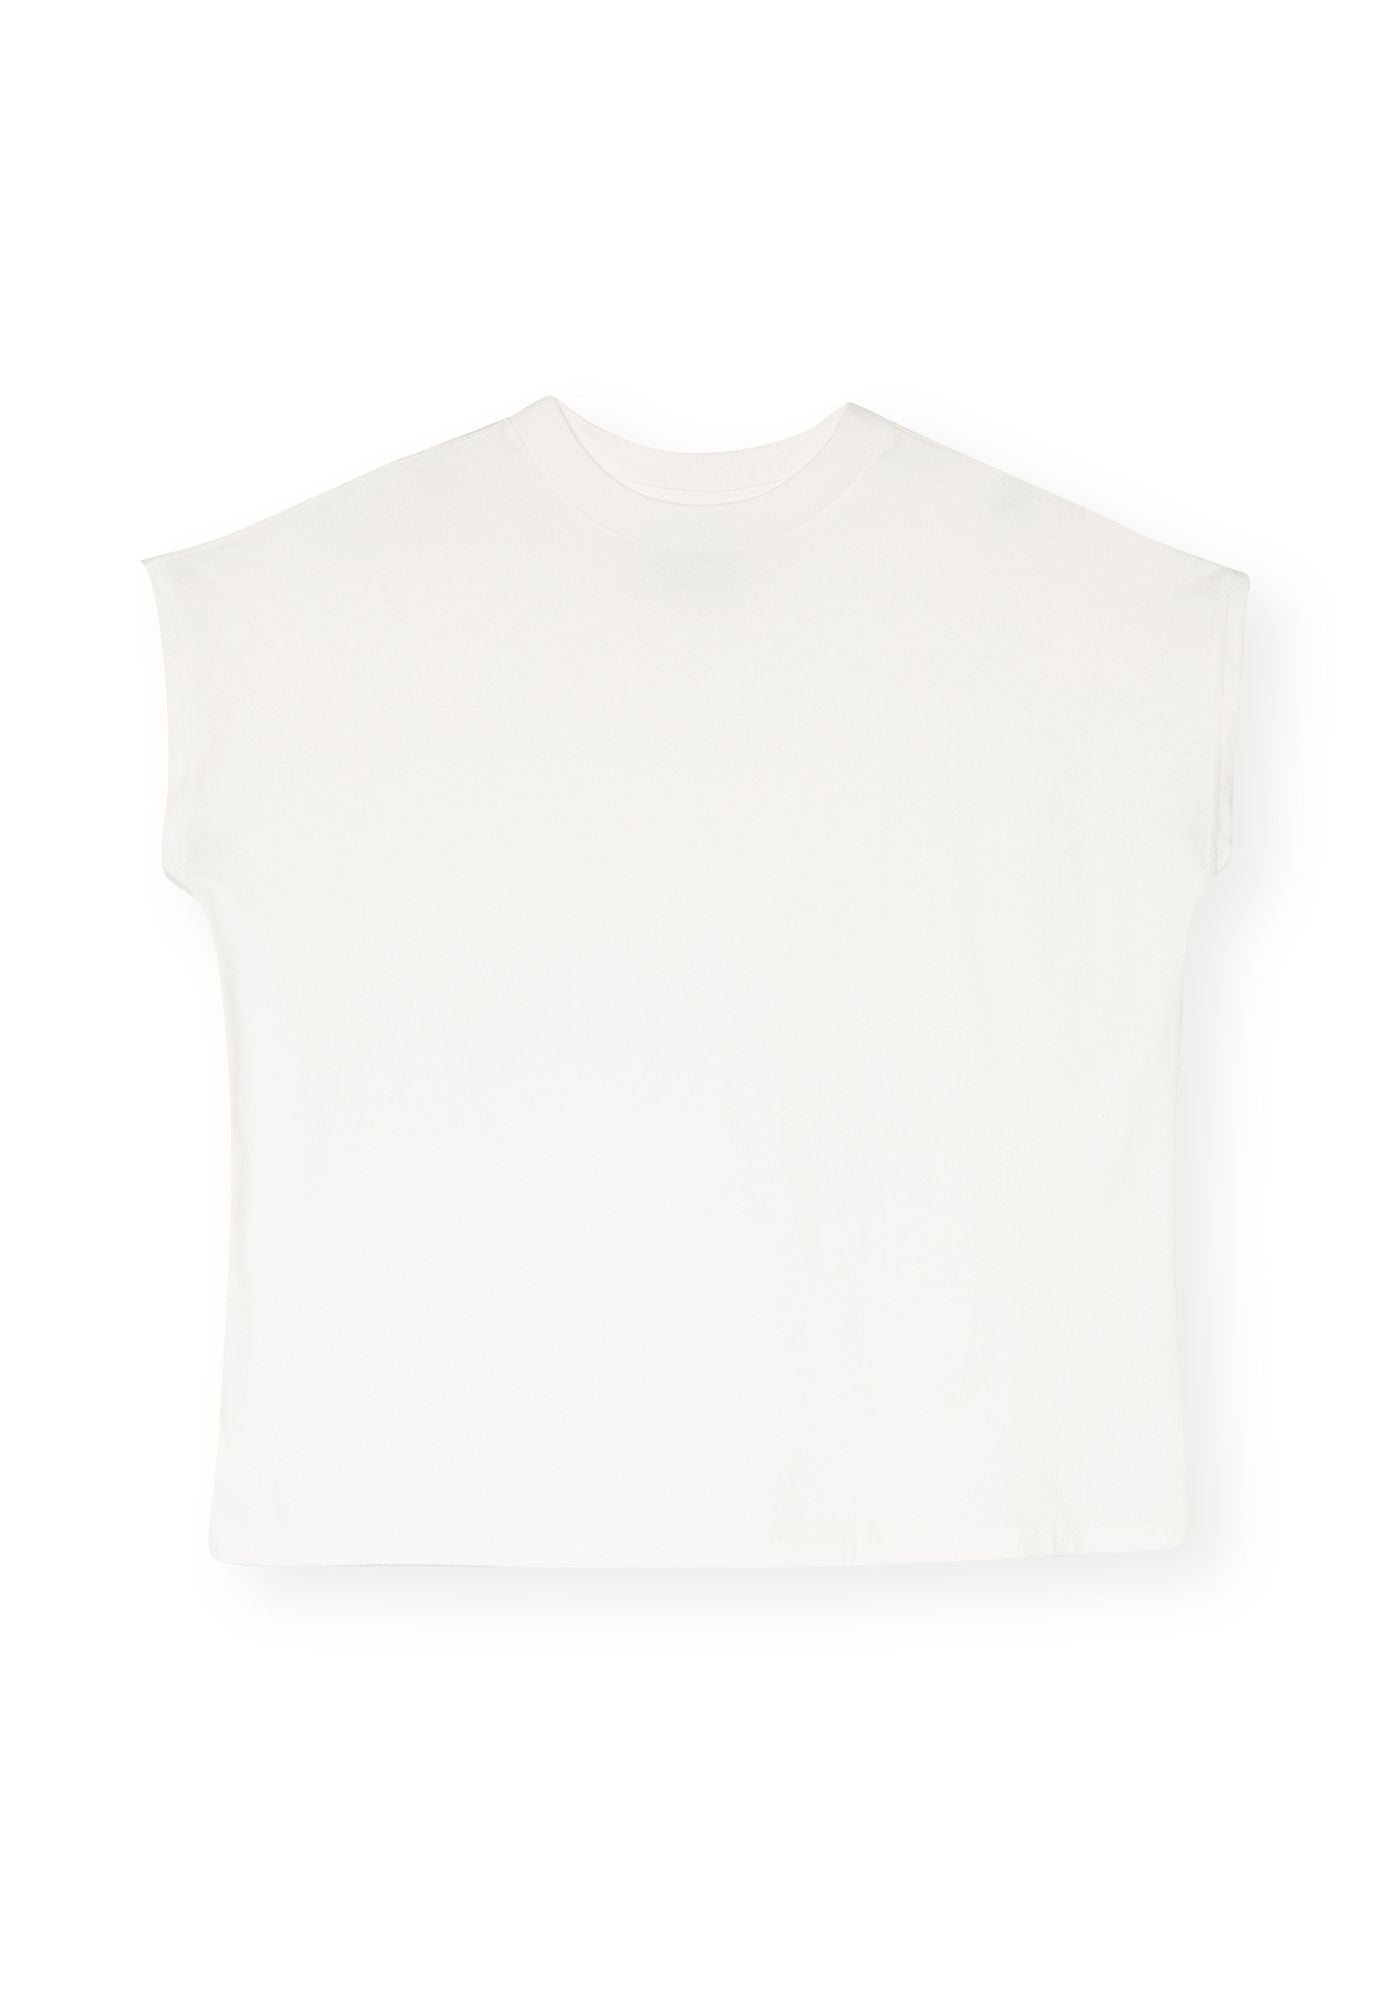 T-Shirt Boxy Off White 7